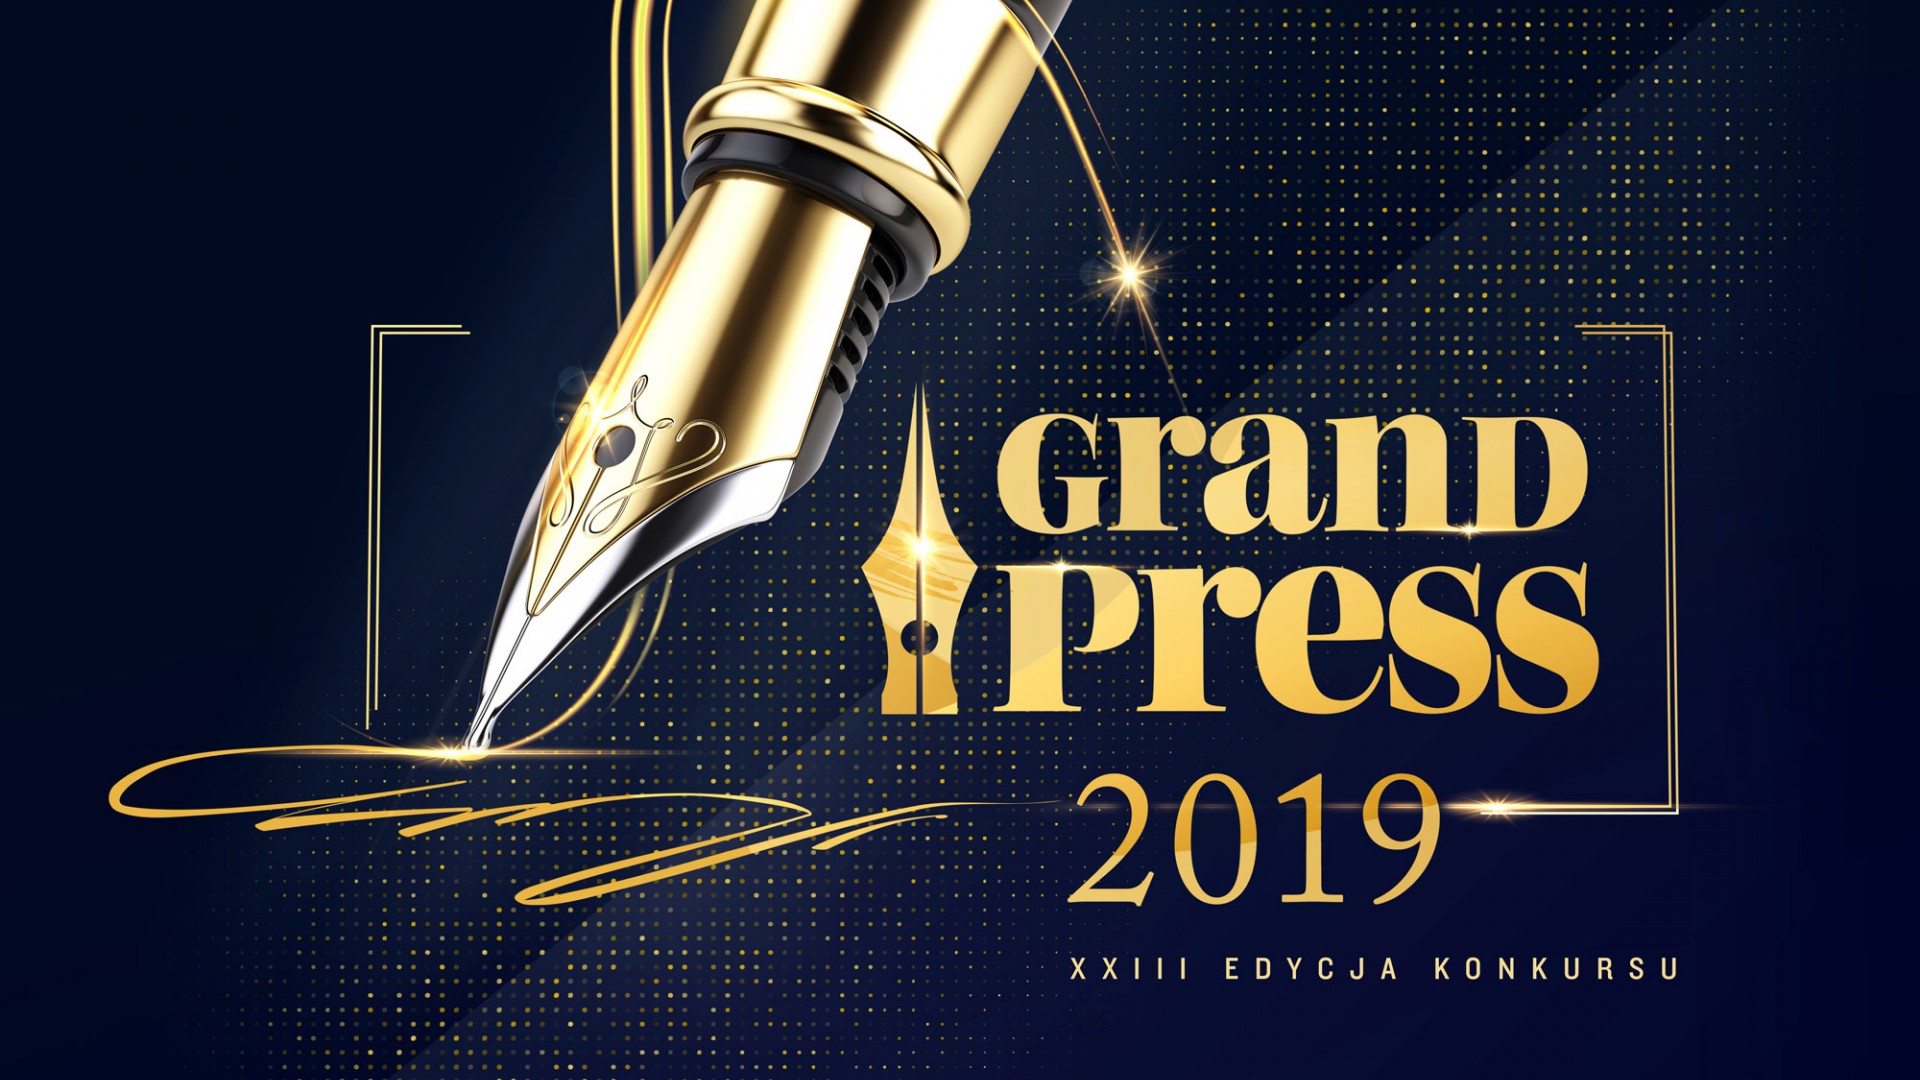 Grand Press 2019 - Bożena Aksamit z nagrodą za reportaż o ks. Jankowskim